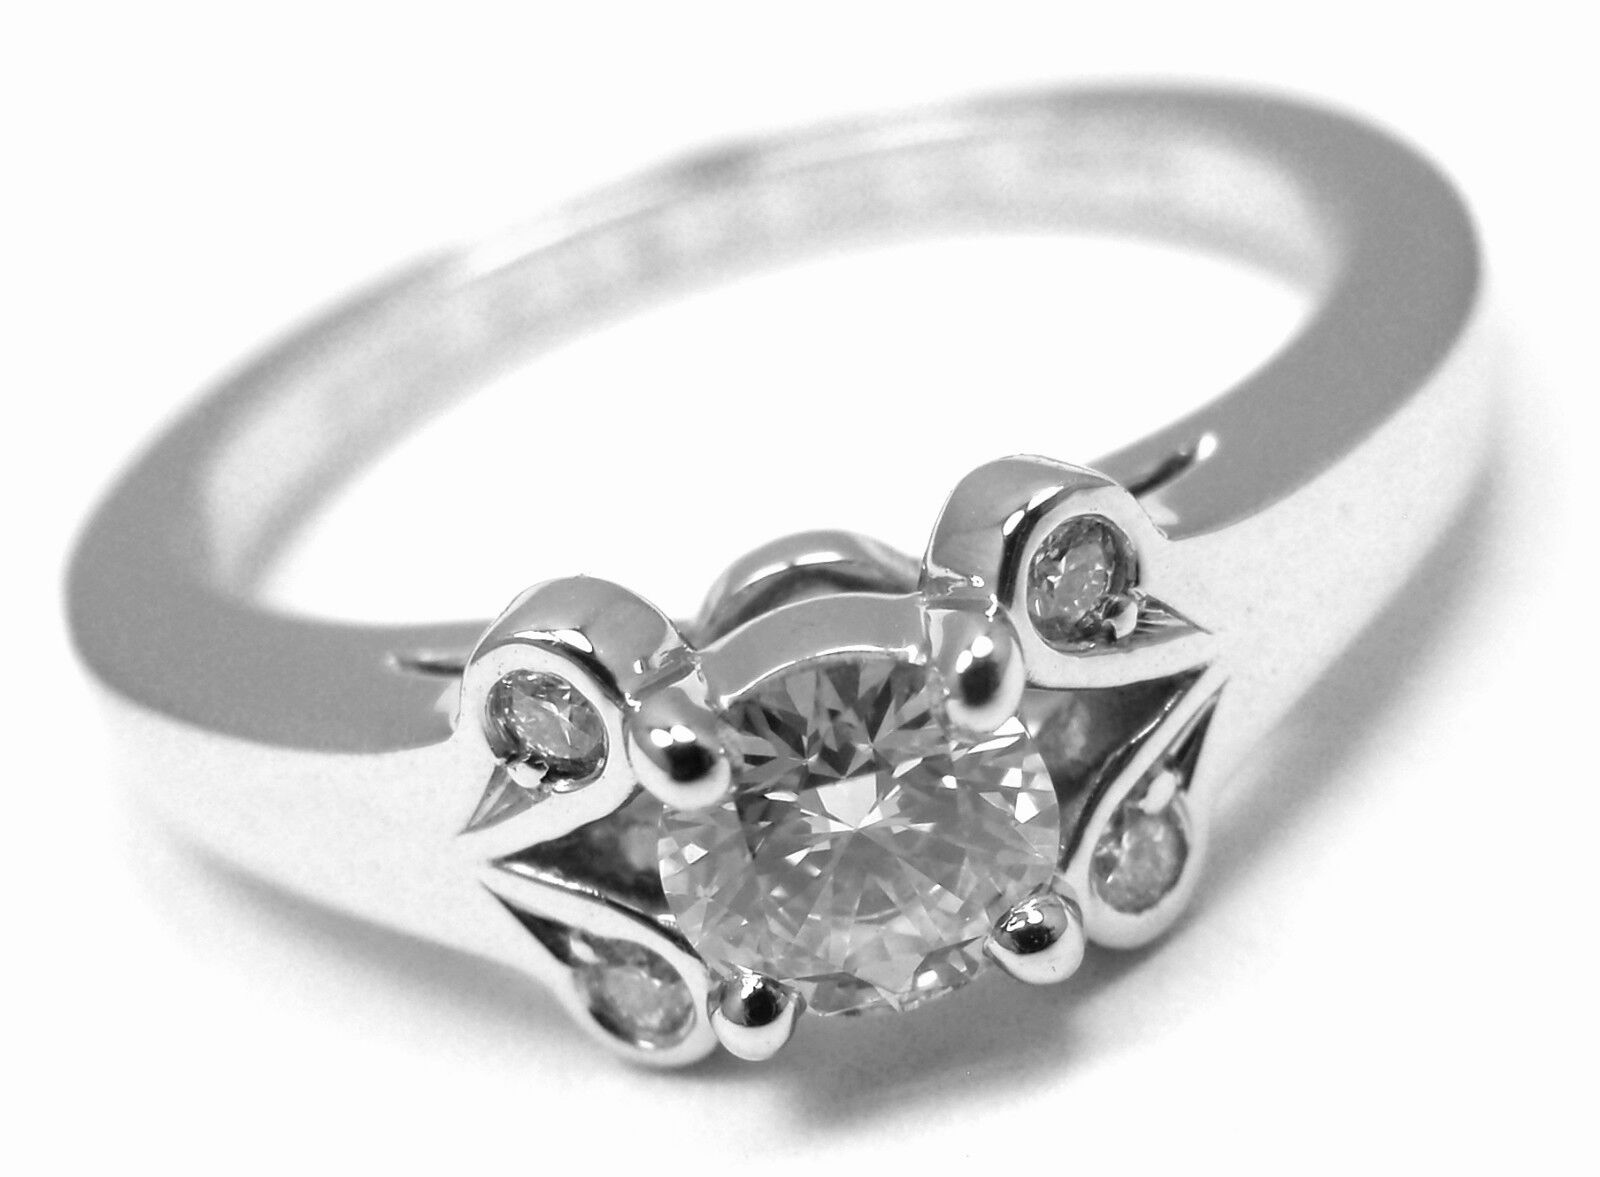 Authentic Cartier Ballerine Platinum .24ct Diamond Engagement Ring Box Paper